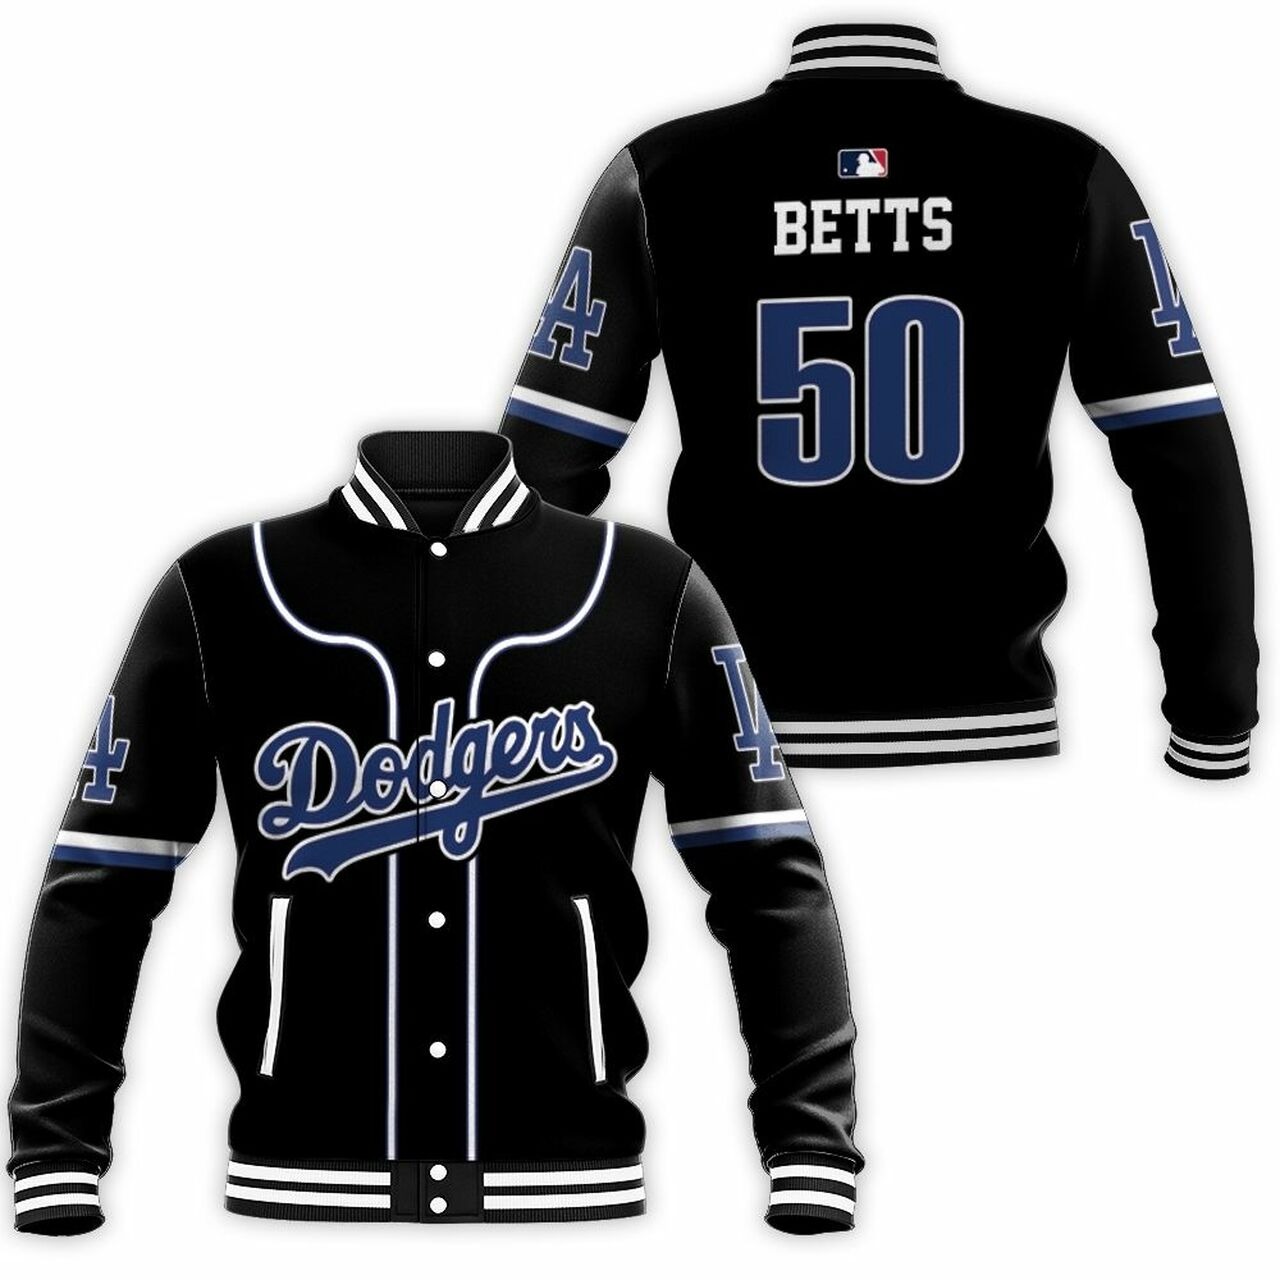 Los Angeles Dodgers Mookie Betts 50 Mlb 2020 Black Baseball Jacket